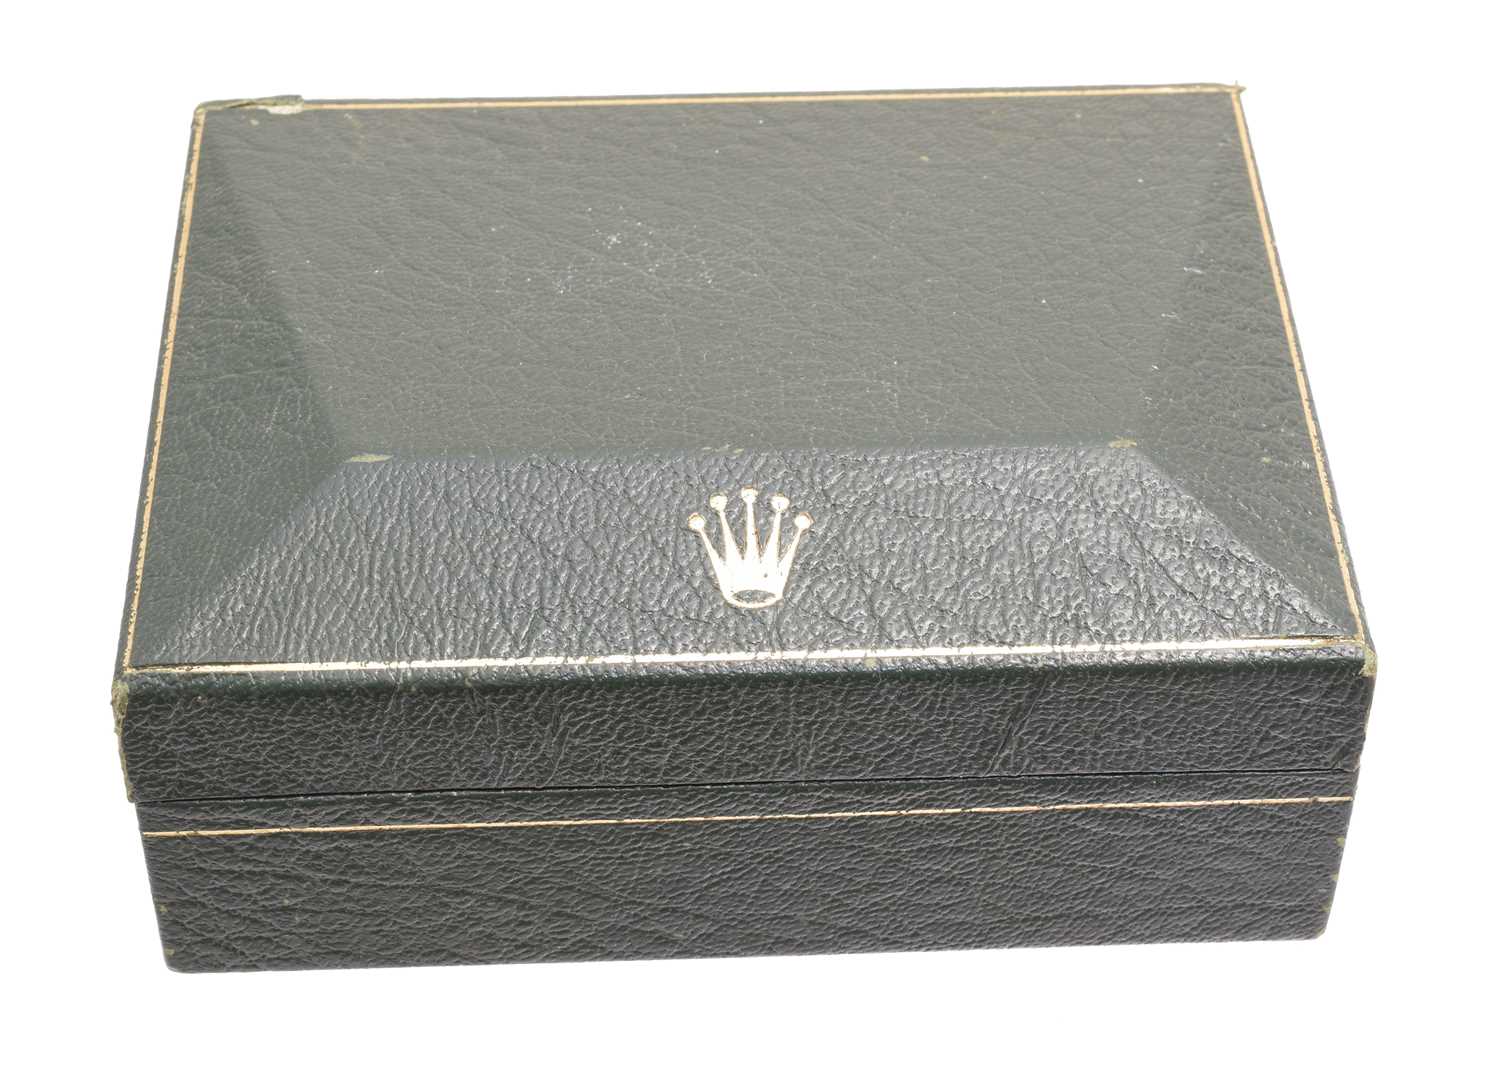 Lot 87 - A vintage Rolex box